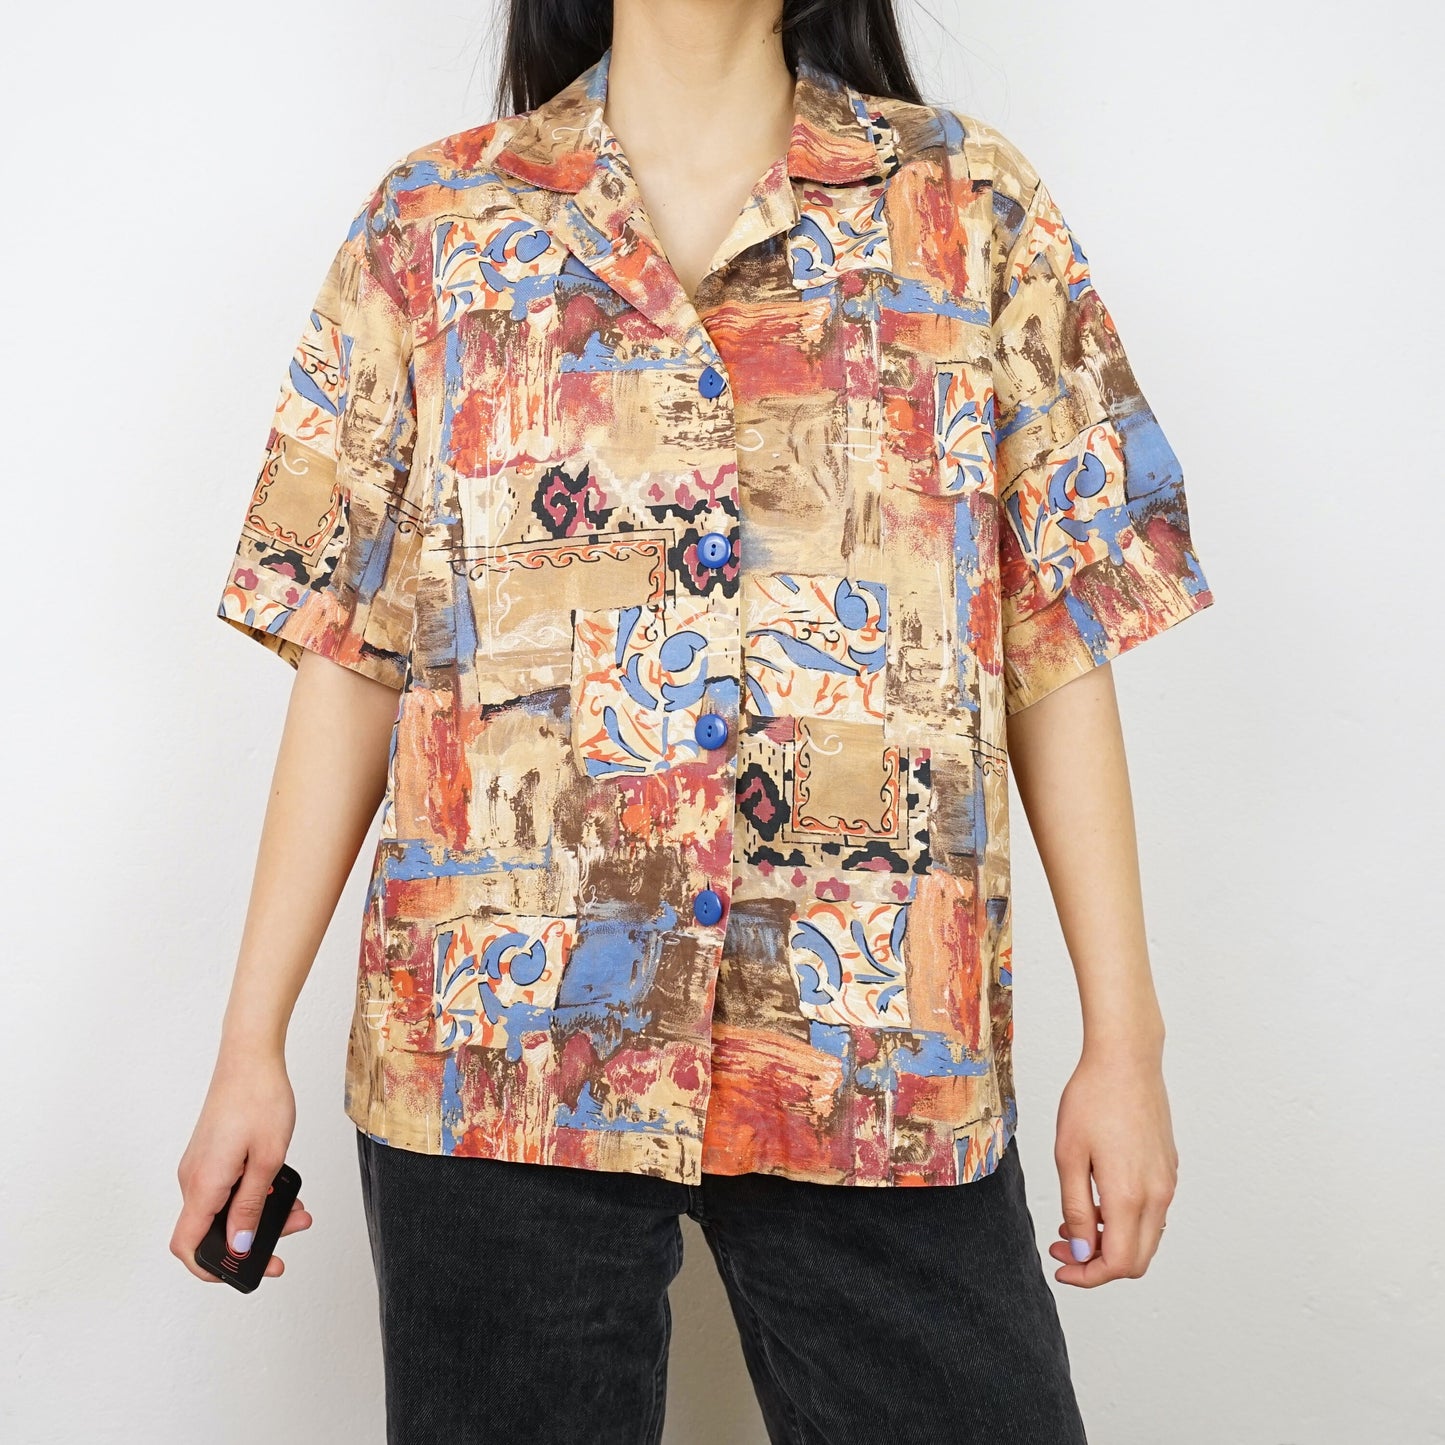 Vintage colorful Shirt size L